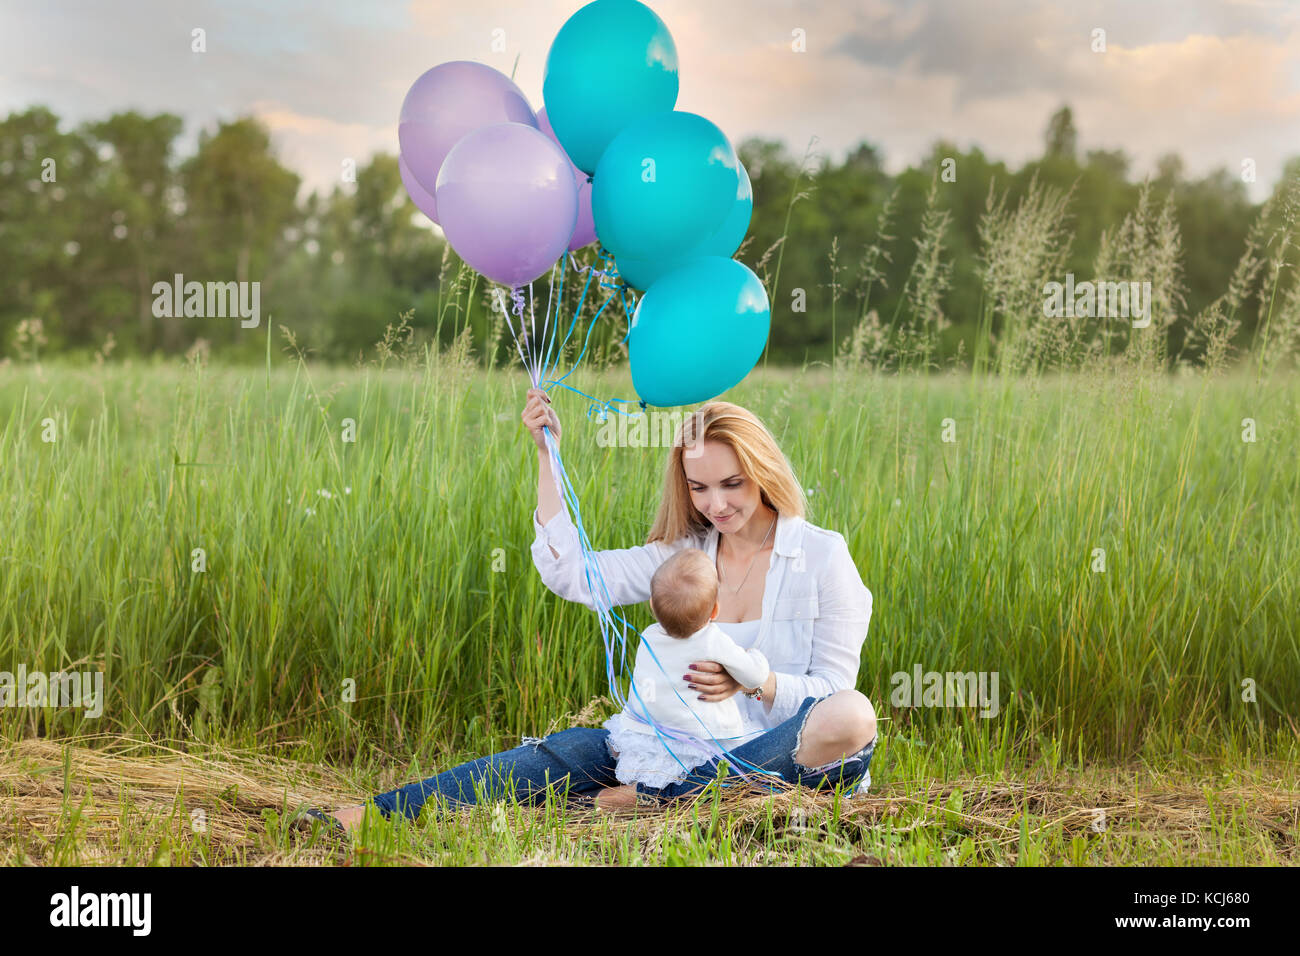 Maman est assise sur l'herbe avec un enfant. maman avec des ballons Banque D'Images